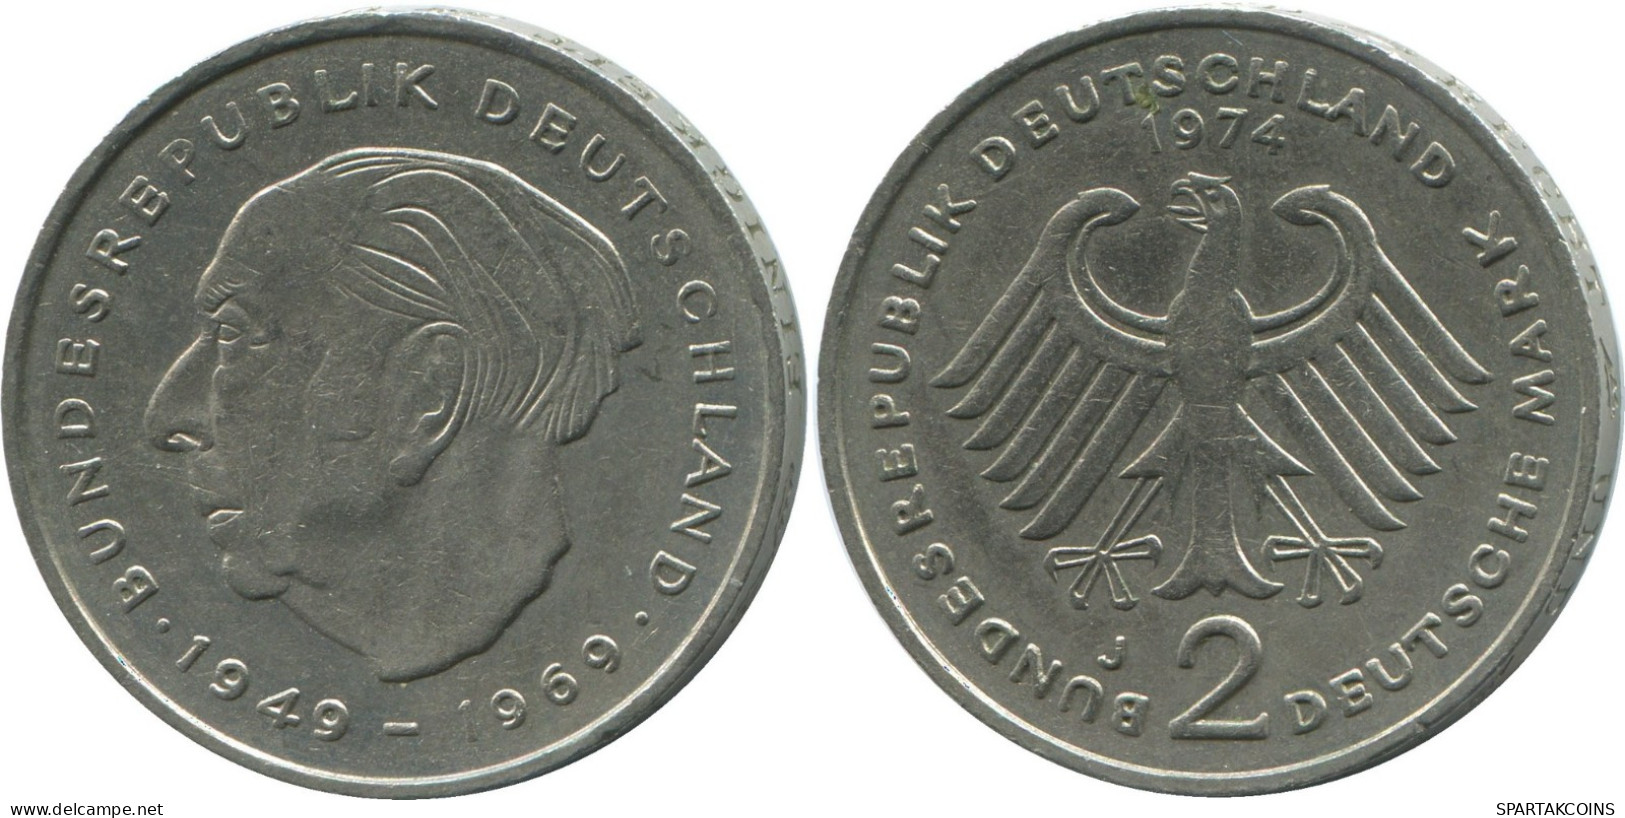 2 DM 1974 J BRD ALEMANIA Moneda GERMANY #DE10373.5.E.A - 2 Mark